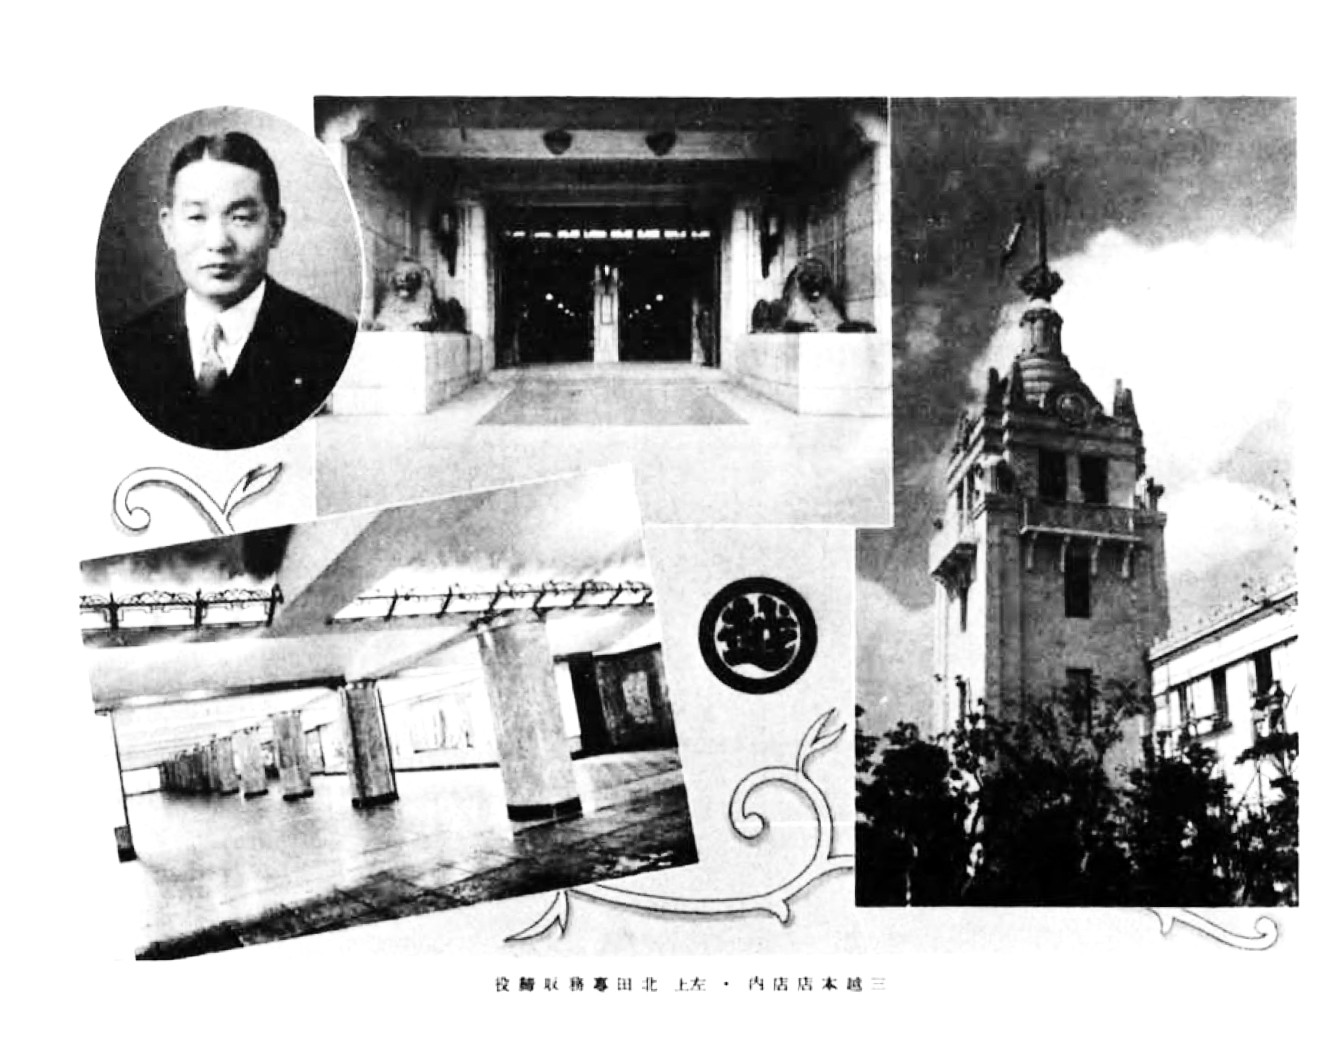 電視進入日本社會前 到後電視時代 日本1934 年的新穎與富裕 旅飯 Pantravel